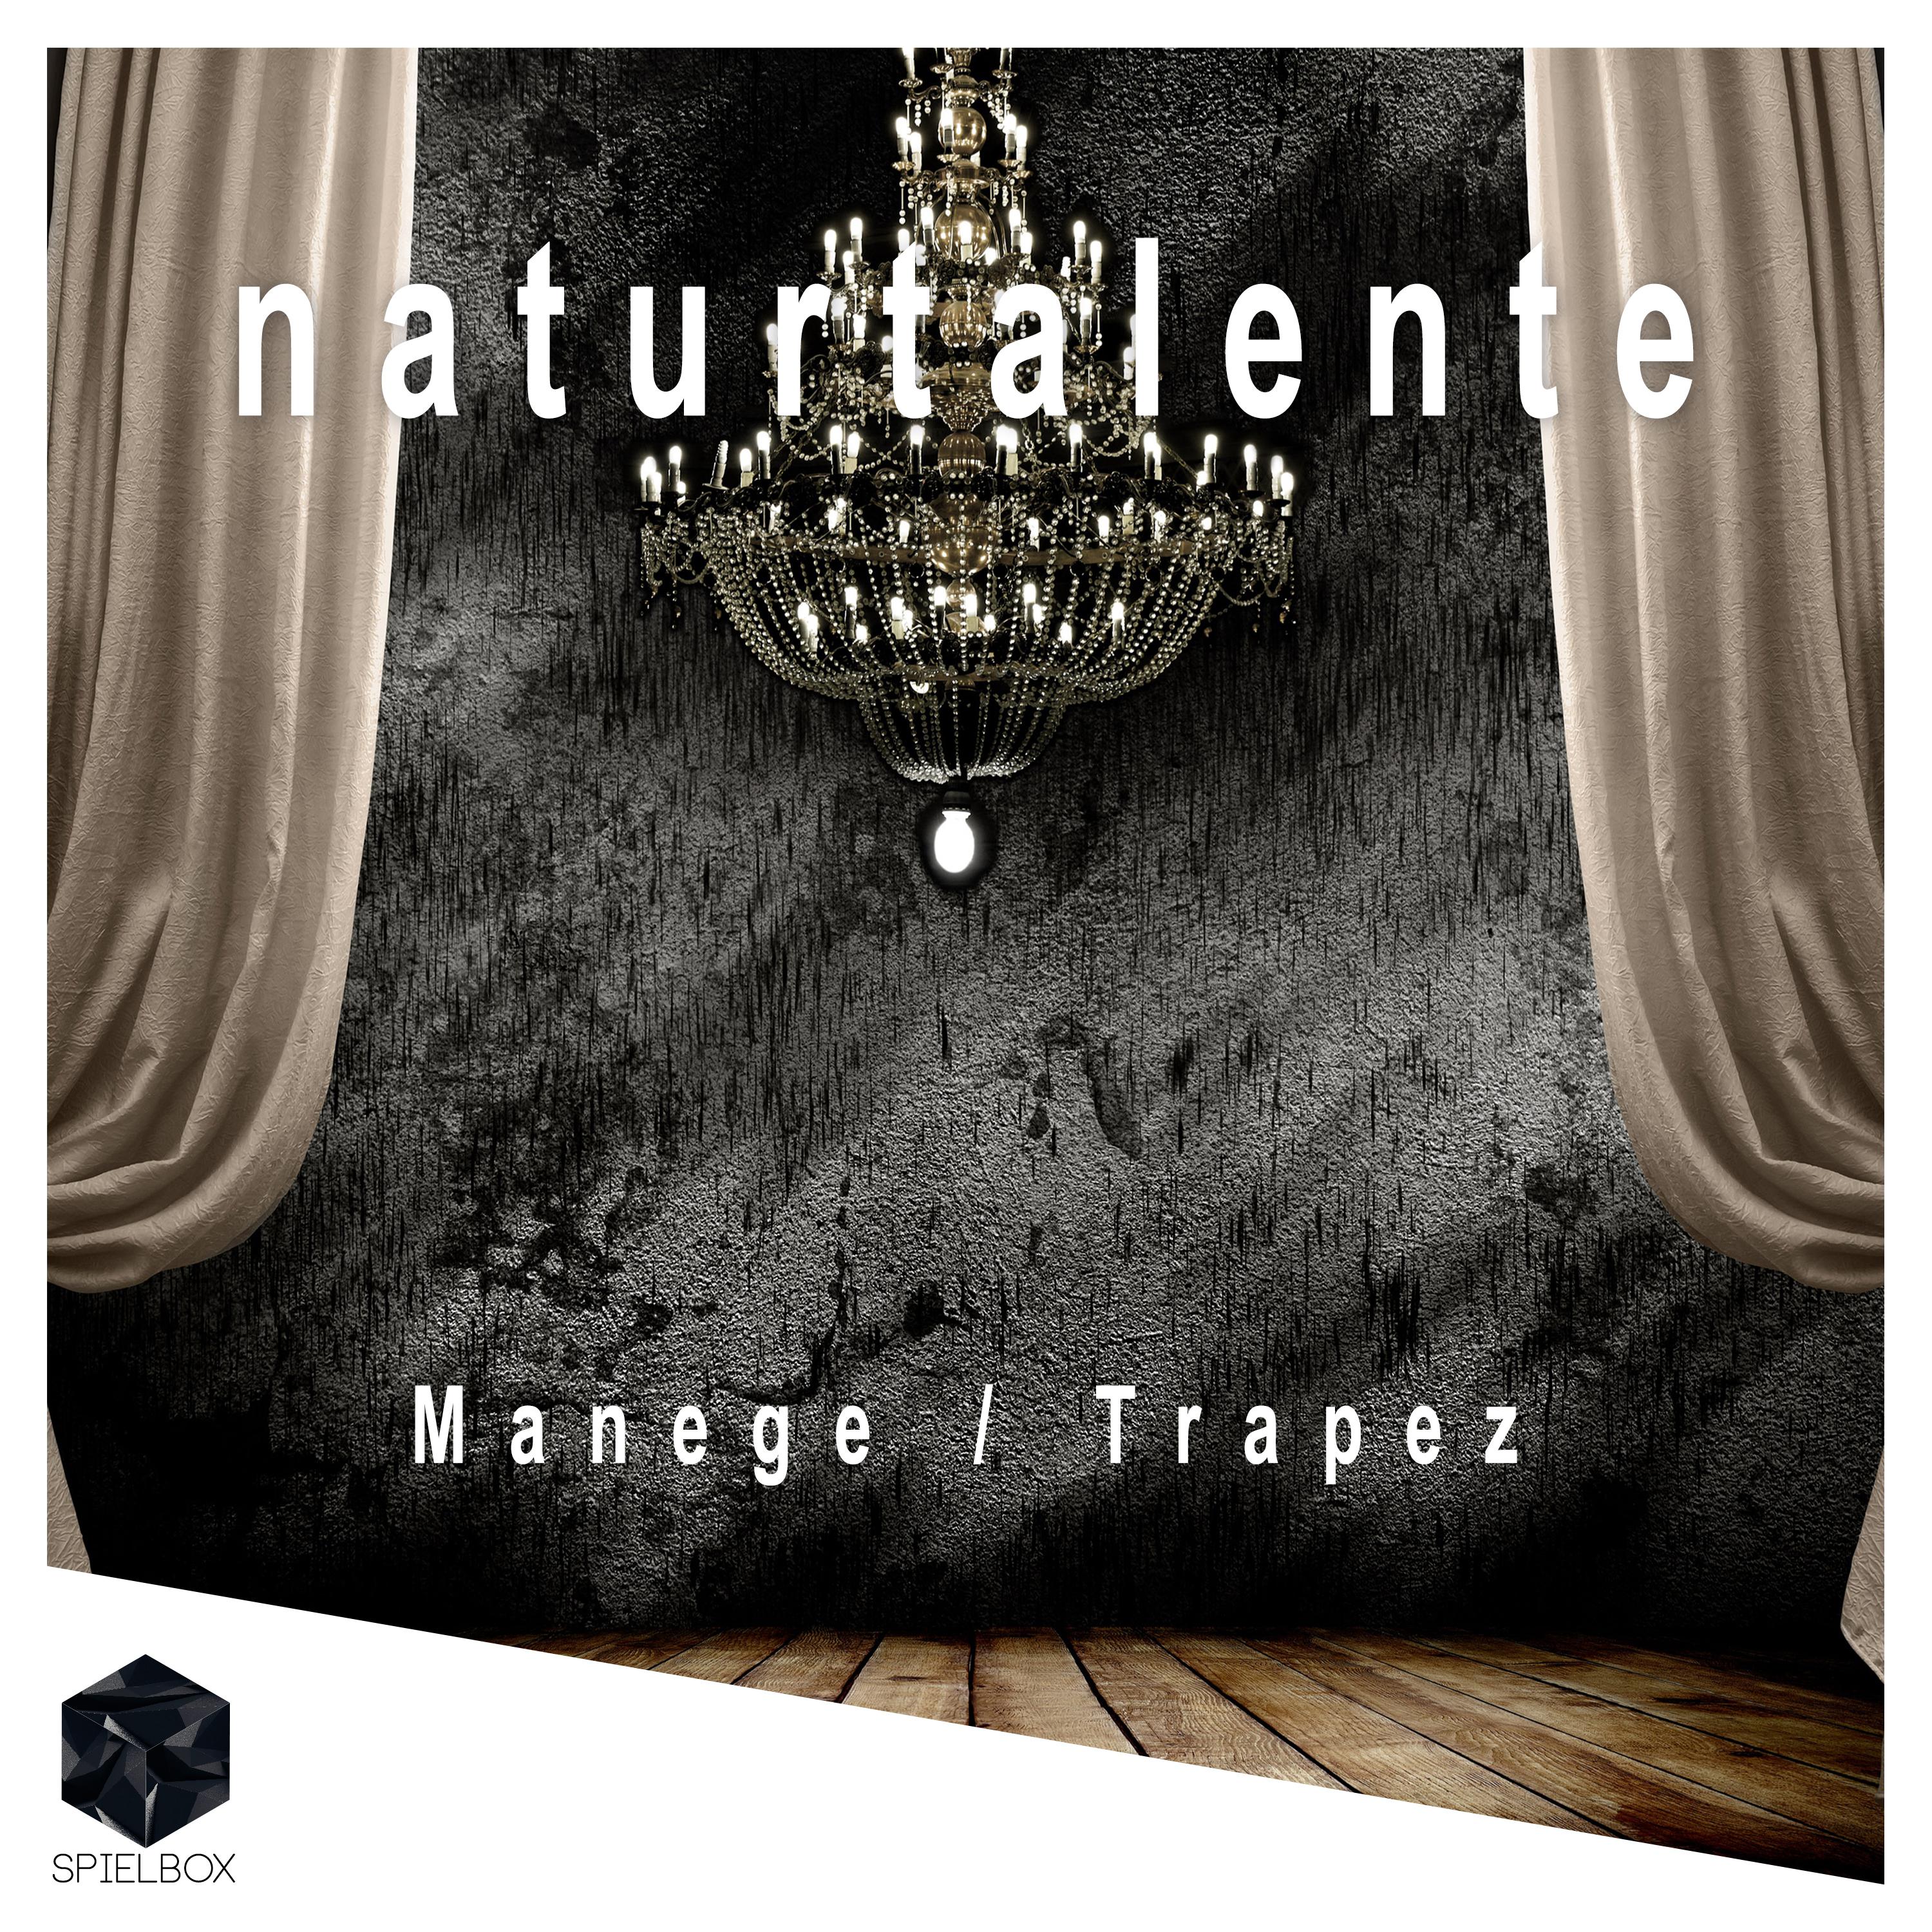 Manege / Trapez